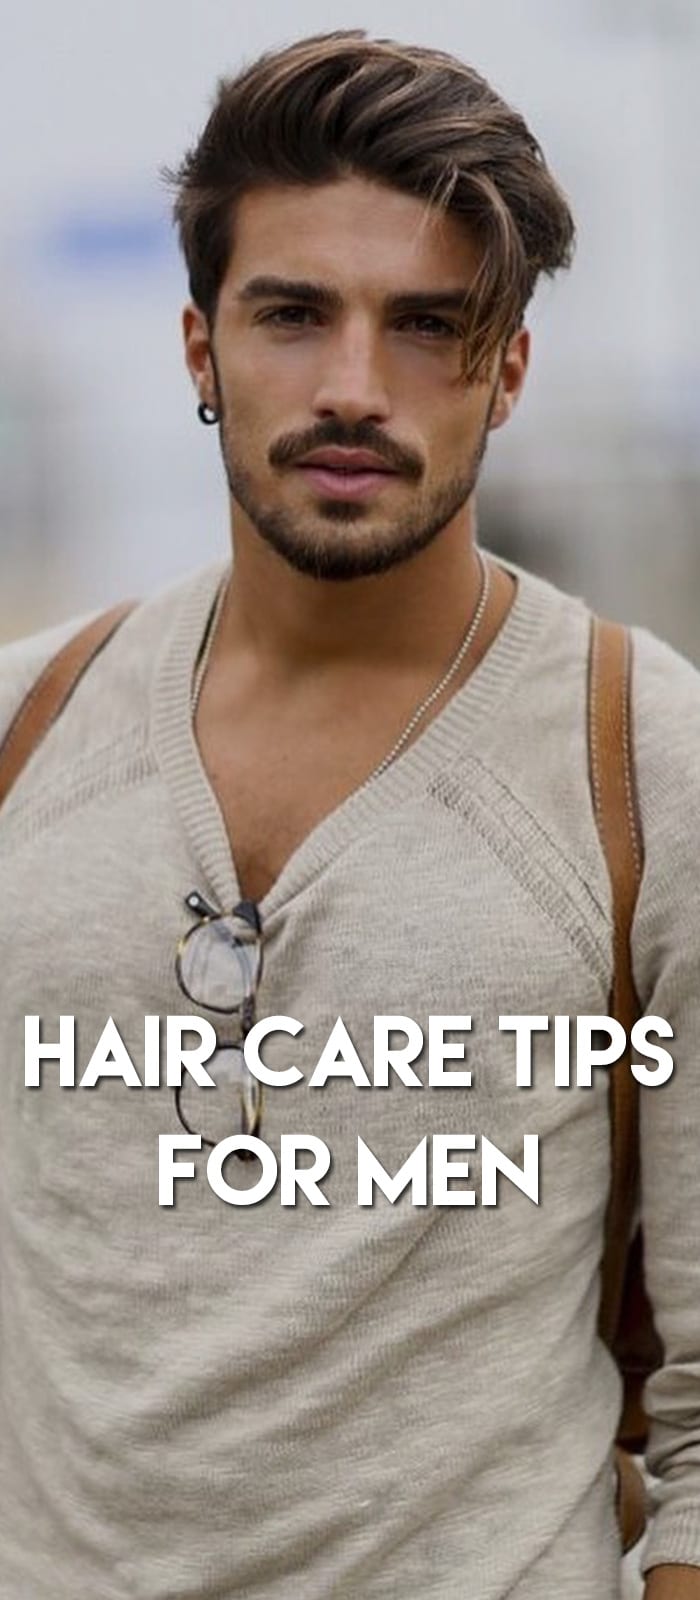 Hair-Care-Tips-For-Men